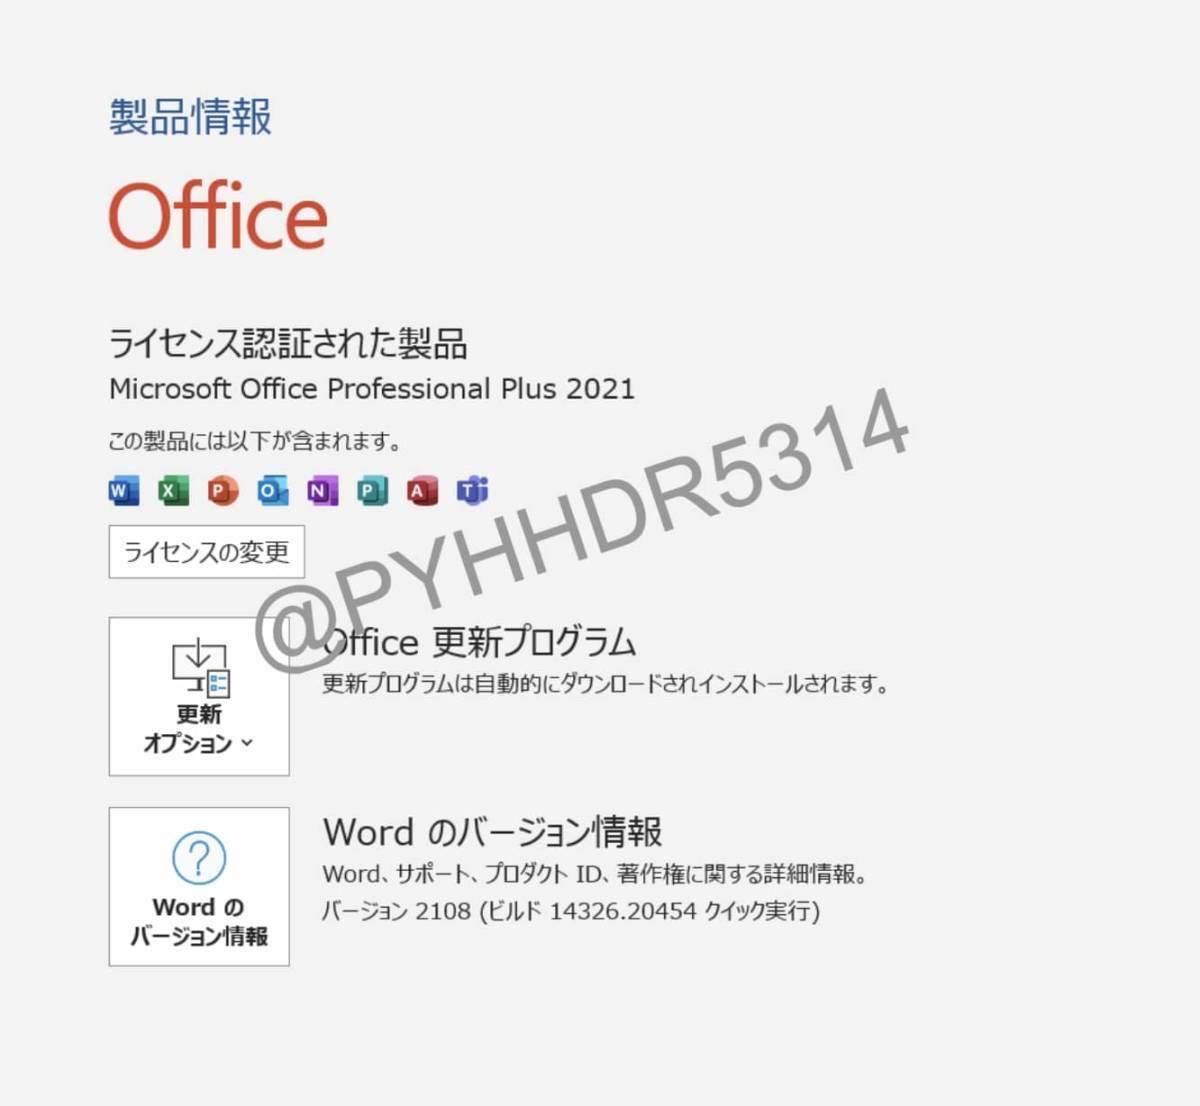 【即対応Office 2021 正規認証】 Microsoft Office 2021 Professional Plus 永年認証 プロダクトキー ライセンスキーの画像2